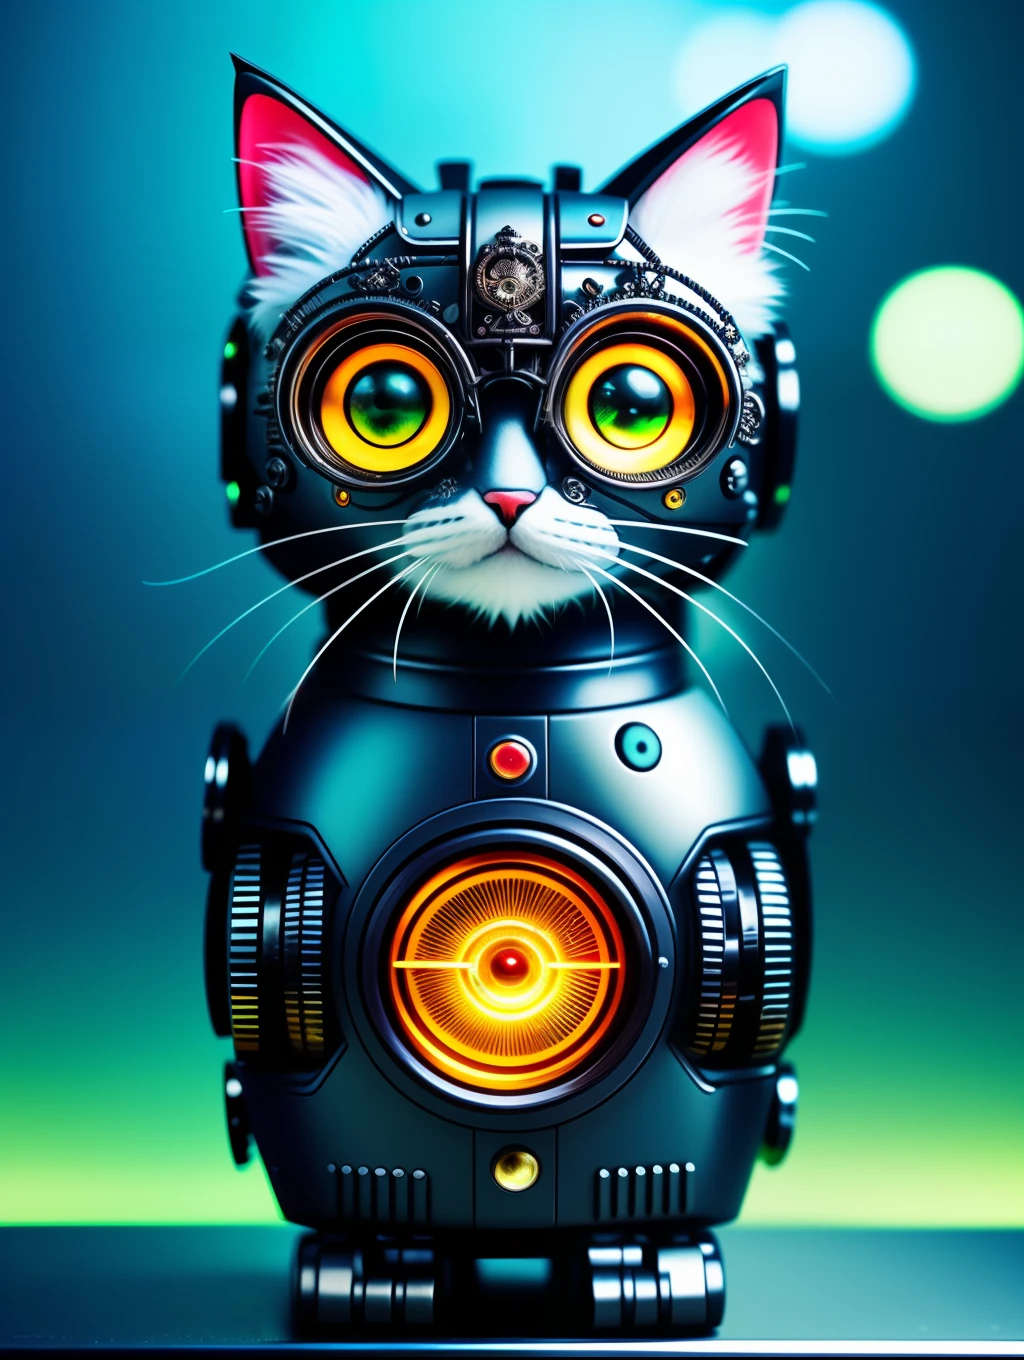 Un lindo gatito esponjoso hecho de metal., robot, estilo ciberpunk, aparato de relojería, ((Detalle intrincado)), HDR, ojos grandes, ((Detalle intrincado, súper detalle)), tubo o tubo de vacío, Lente de cine, viñeta, Fondo efecto bokeh